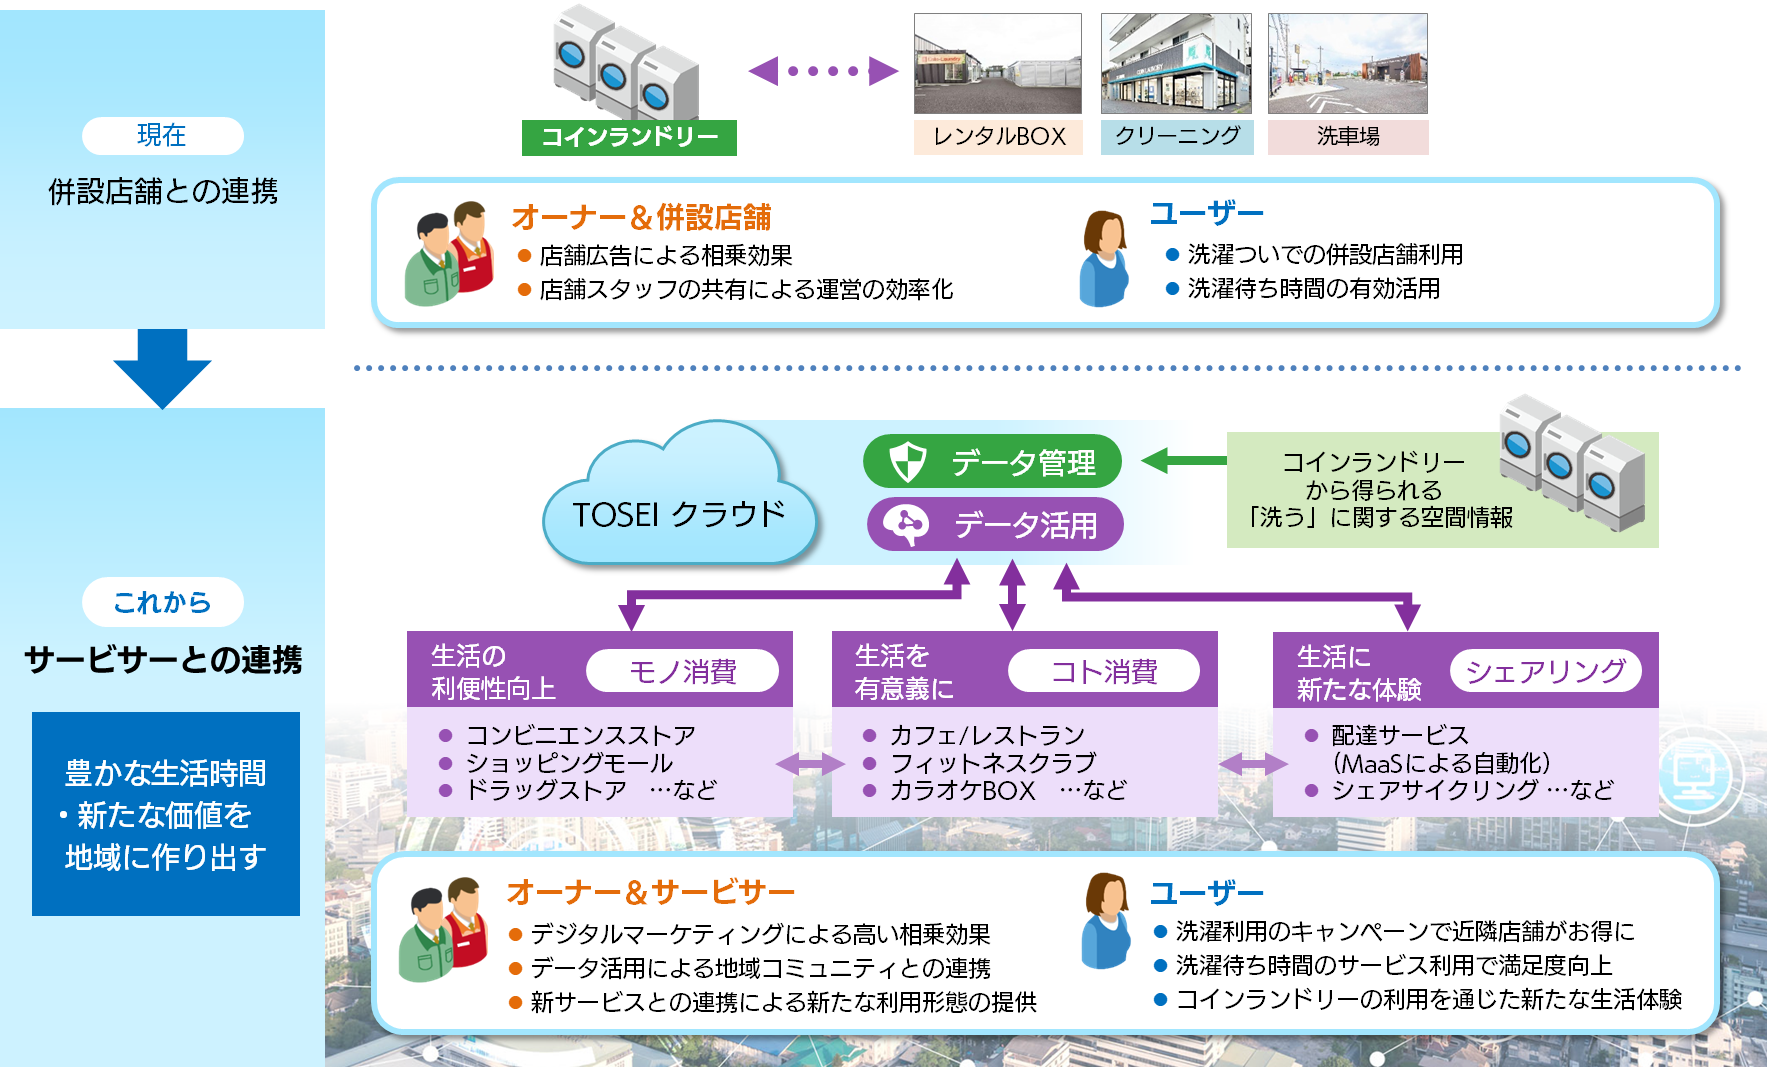 「TOSEI クラウド」 サービスコンセプト図